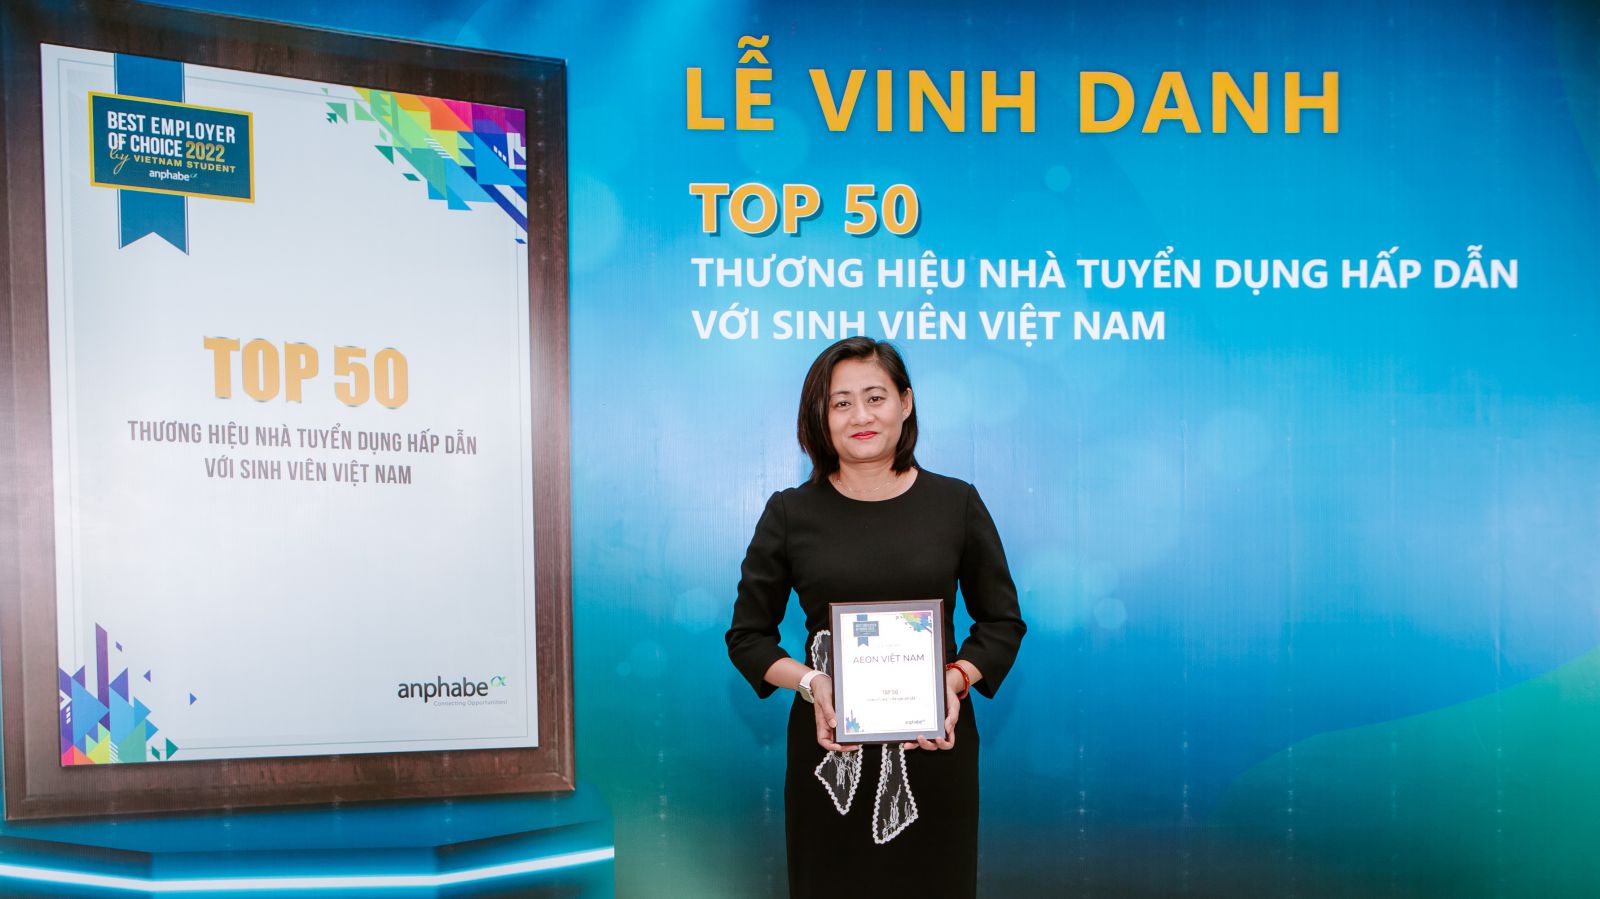 Bà Trần Thị Tuyết Trinh, Trưởng phòng nhân sự AEON Việt Nam tại buổi trao giải Top 50 thương hiệu nhà tuyển dụng hấp dẫn nhất với sinh viên